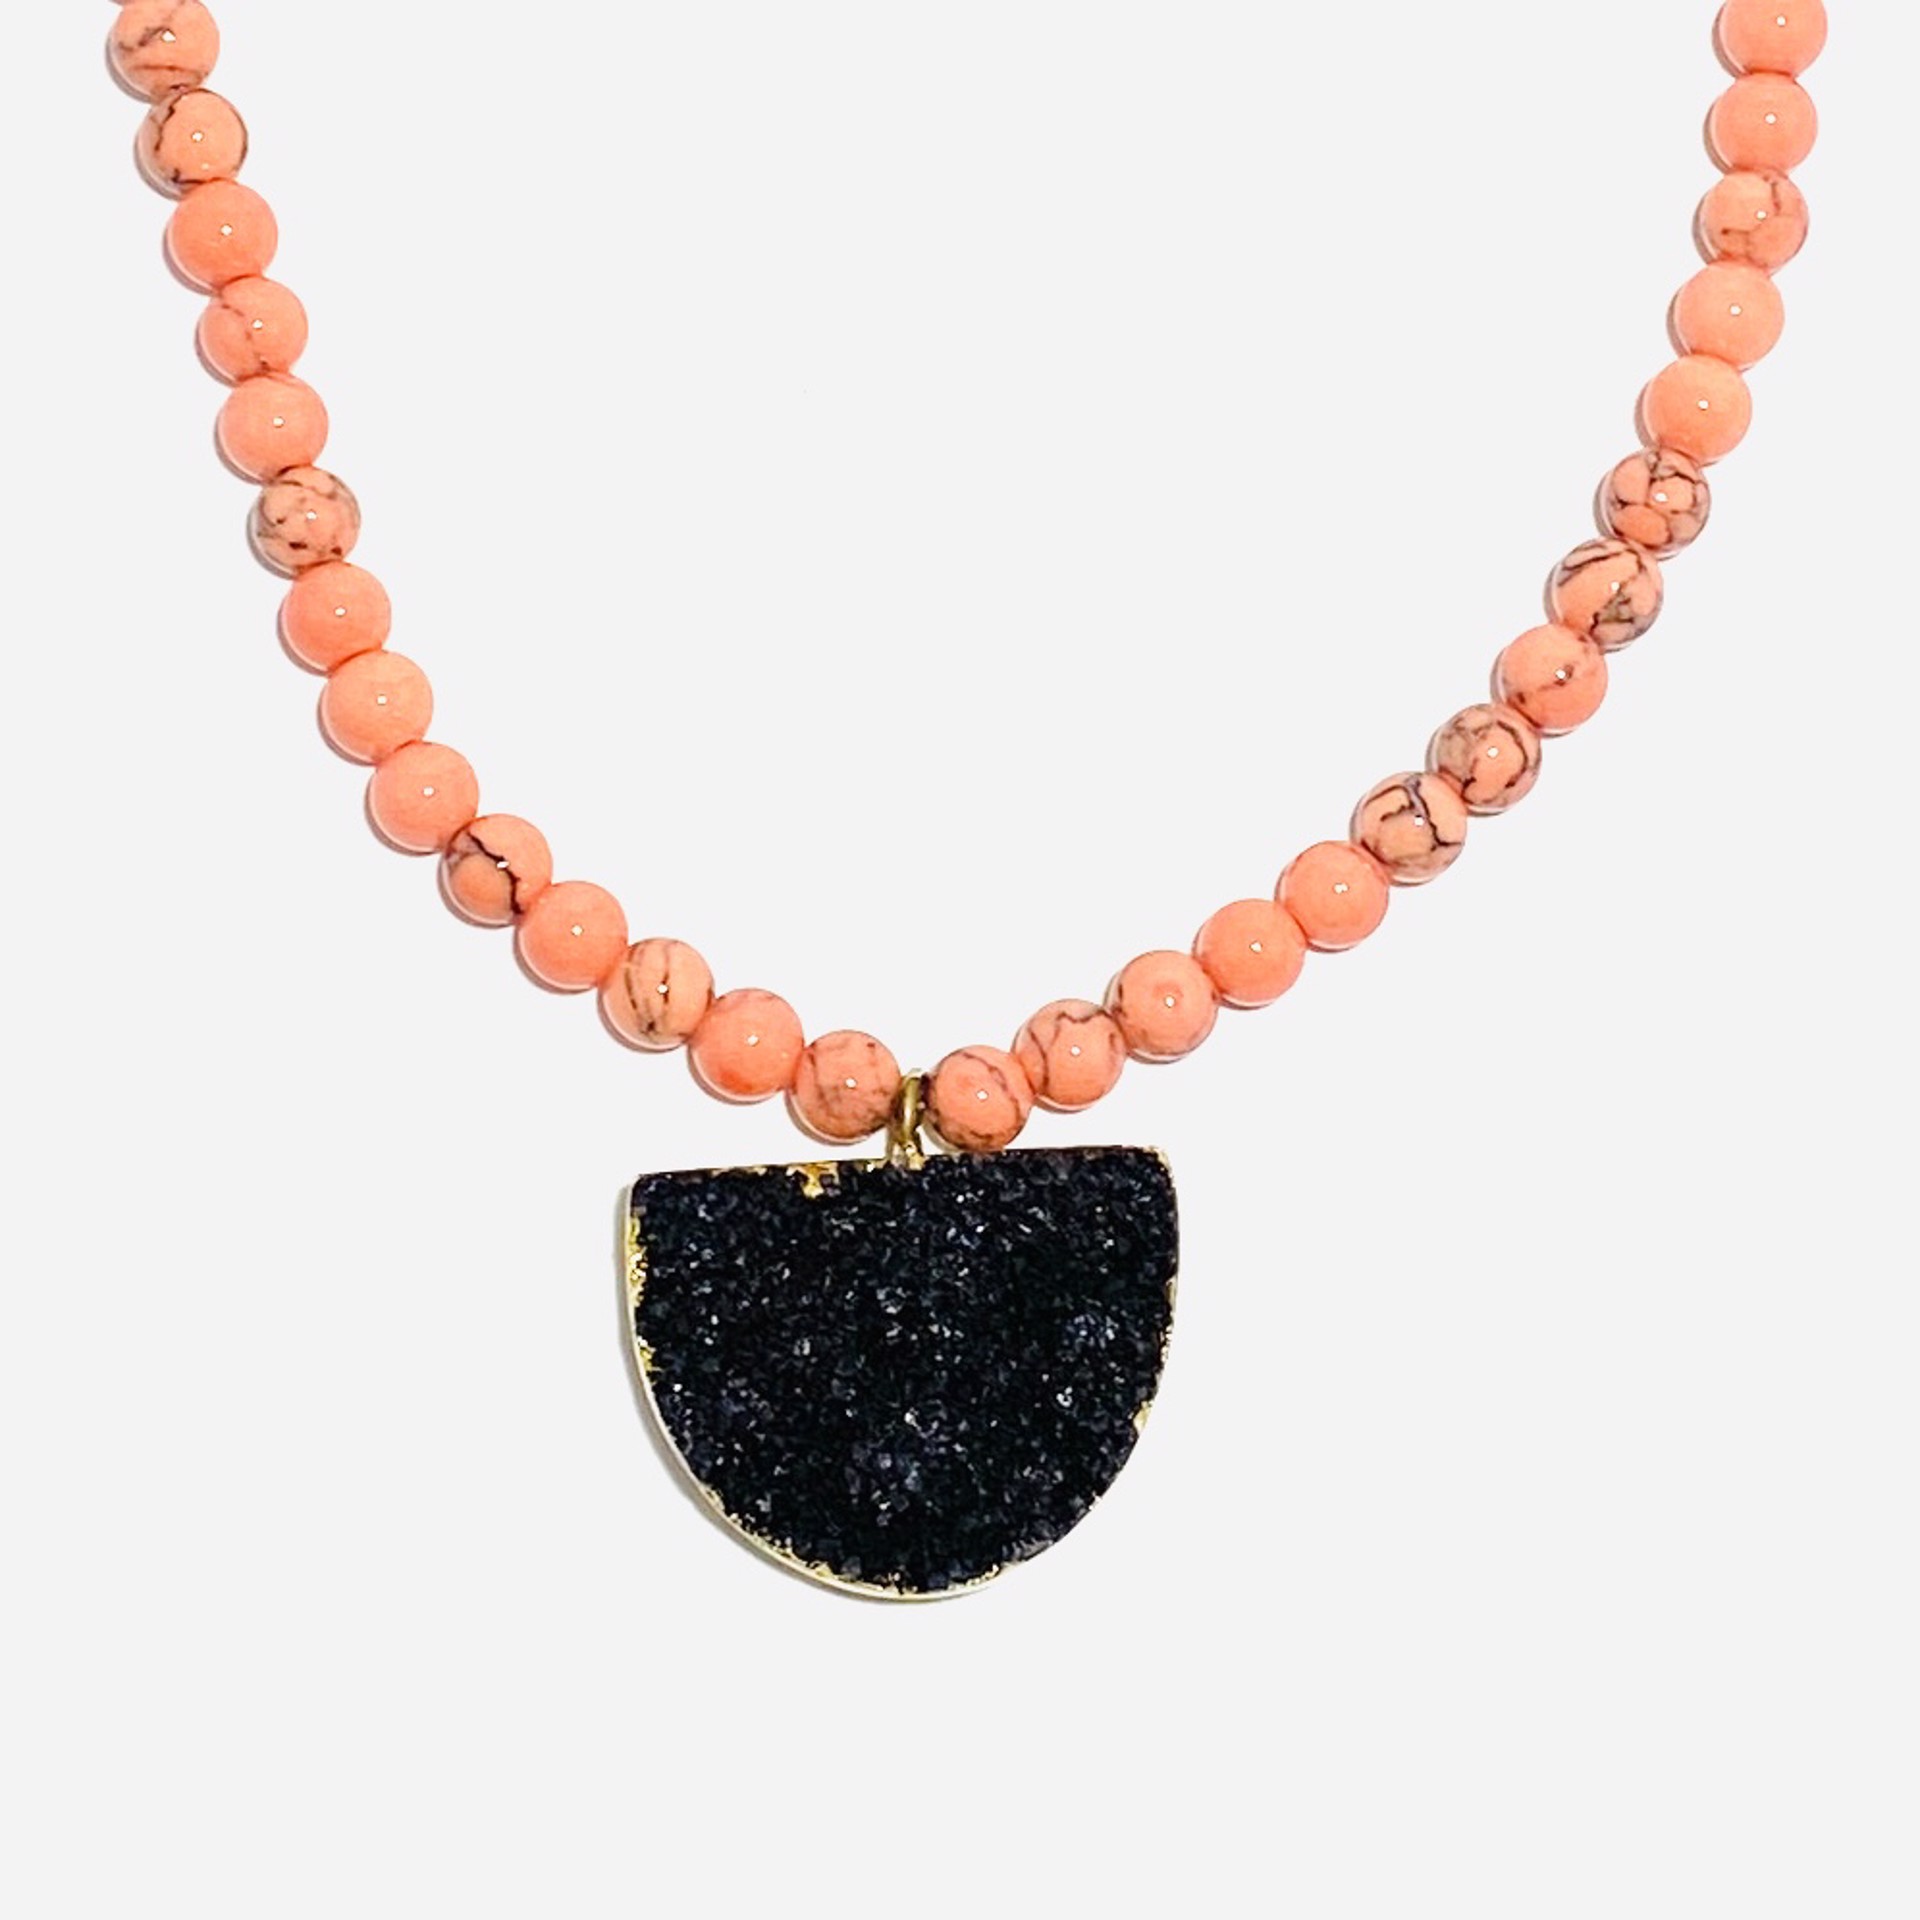 Salmon Magnesite Black Druzy Focal Necklace by Nance Trueworthy